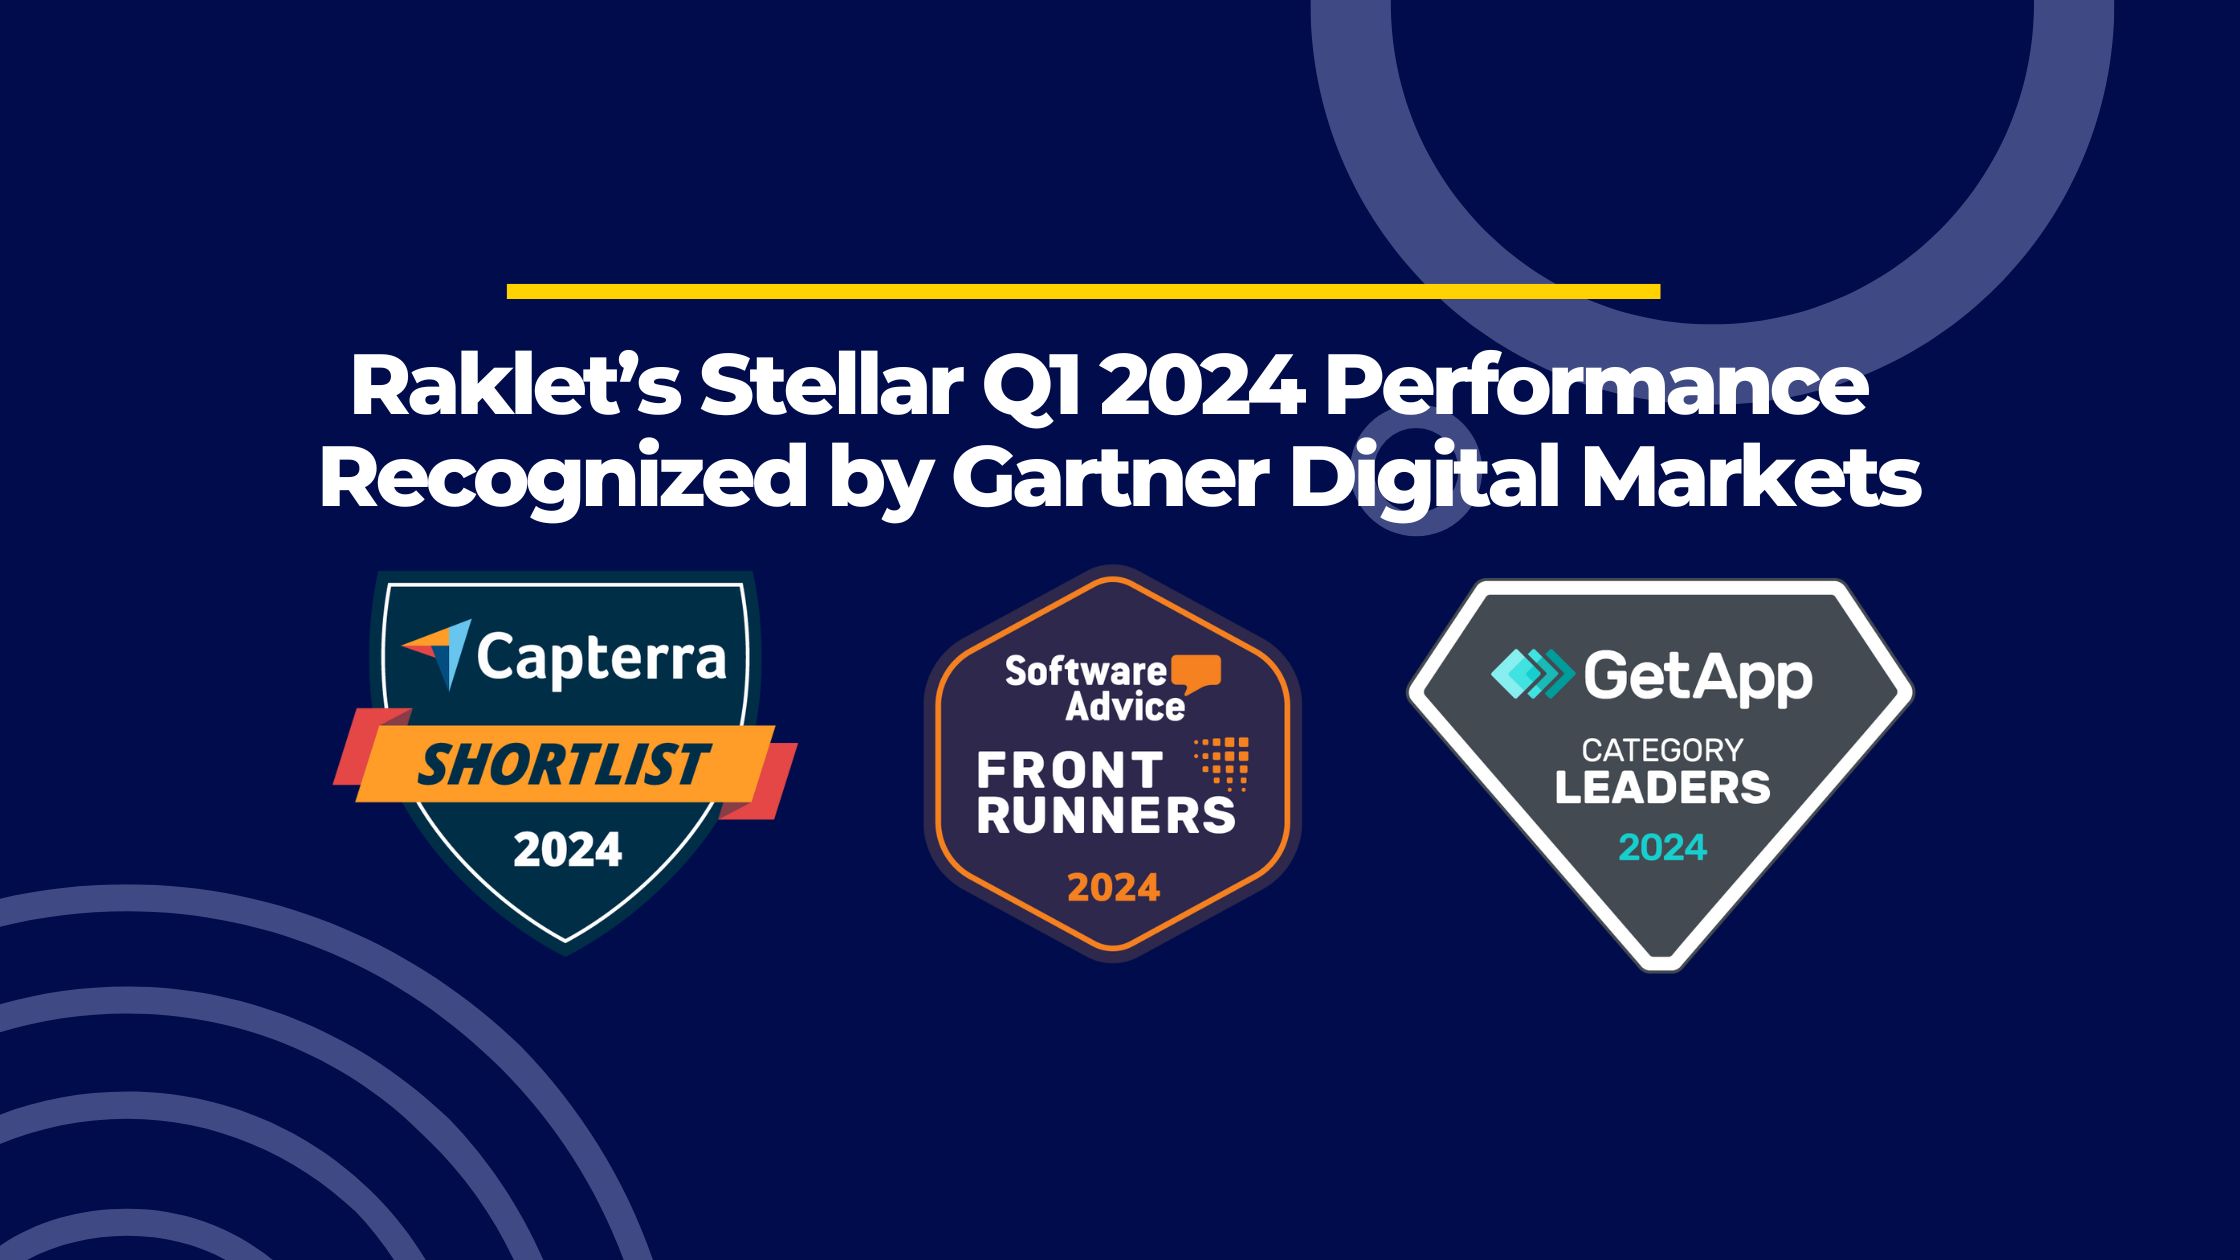 Raklet’s Stellar Q1 2024 Performance Recognized by Gartner Digital Markets